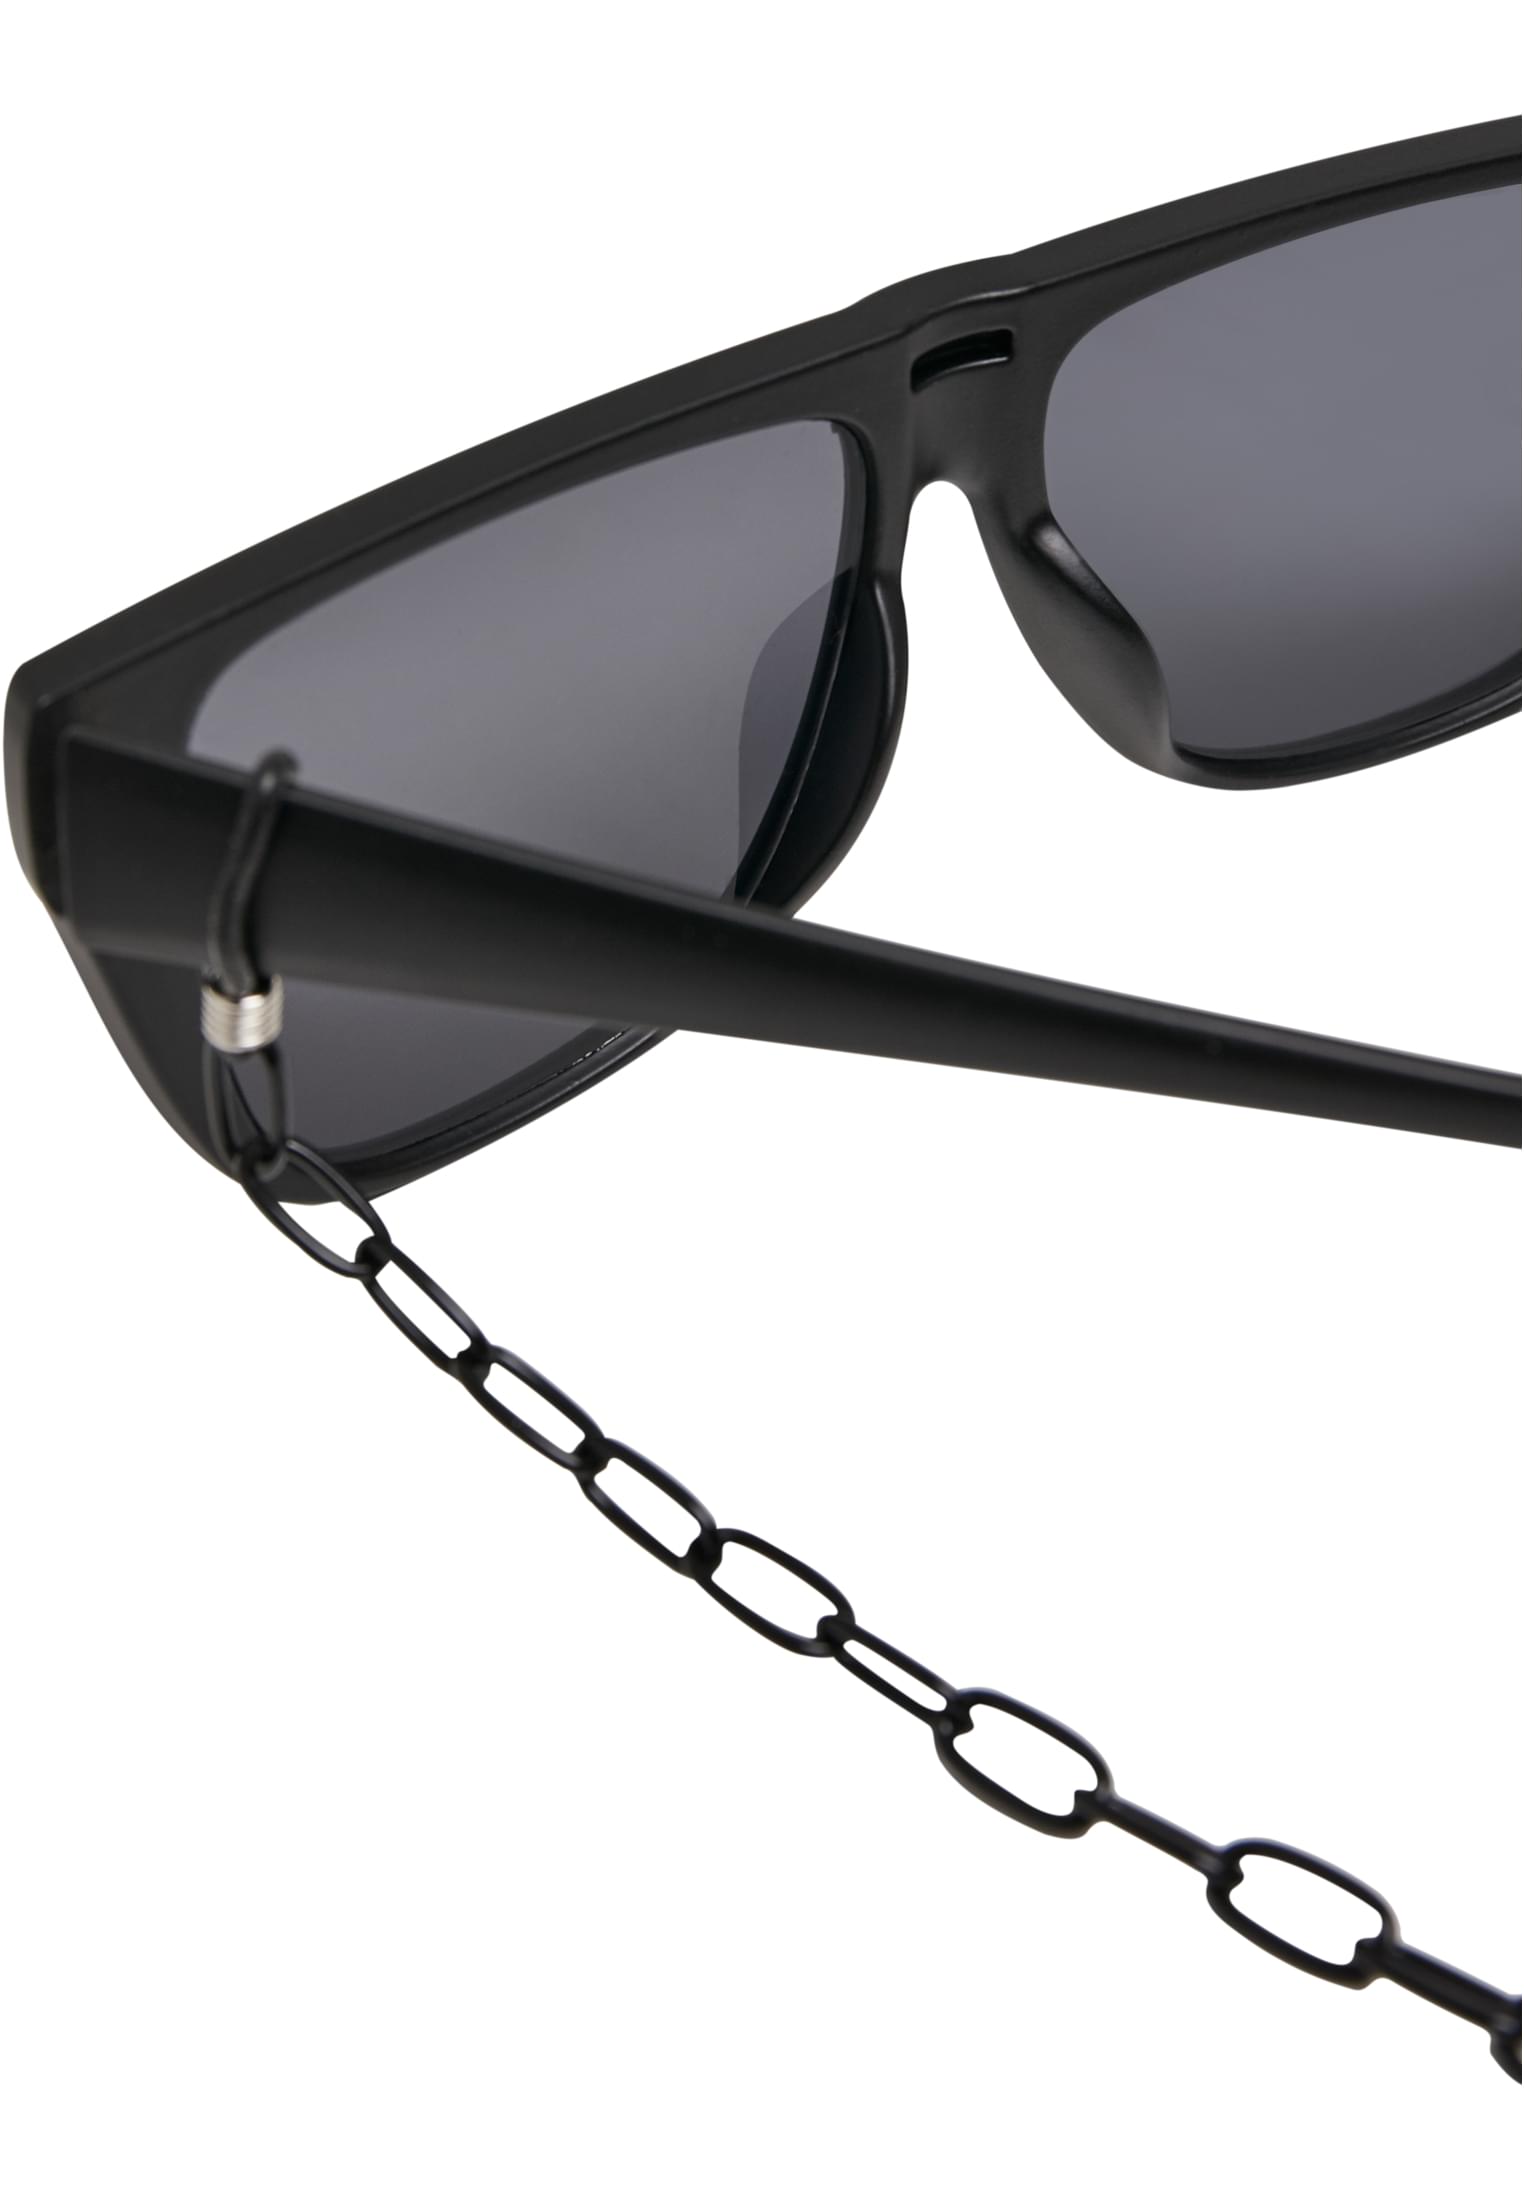 Visor-TB2780 108 Sunglasses Chain